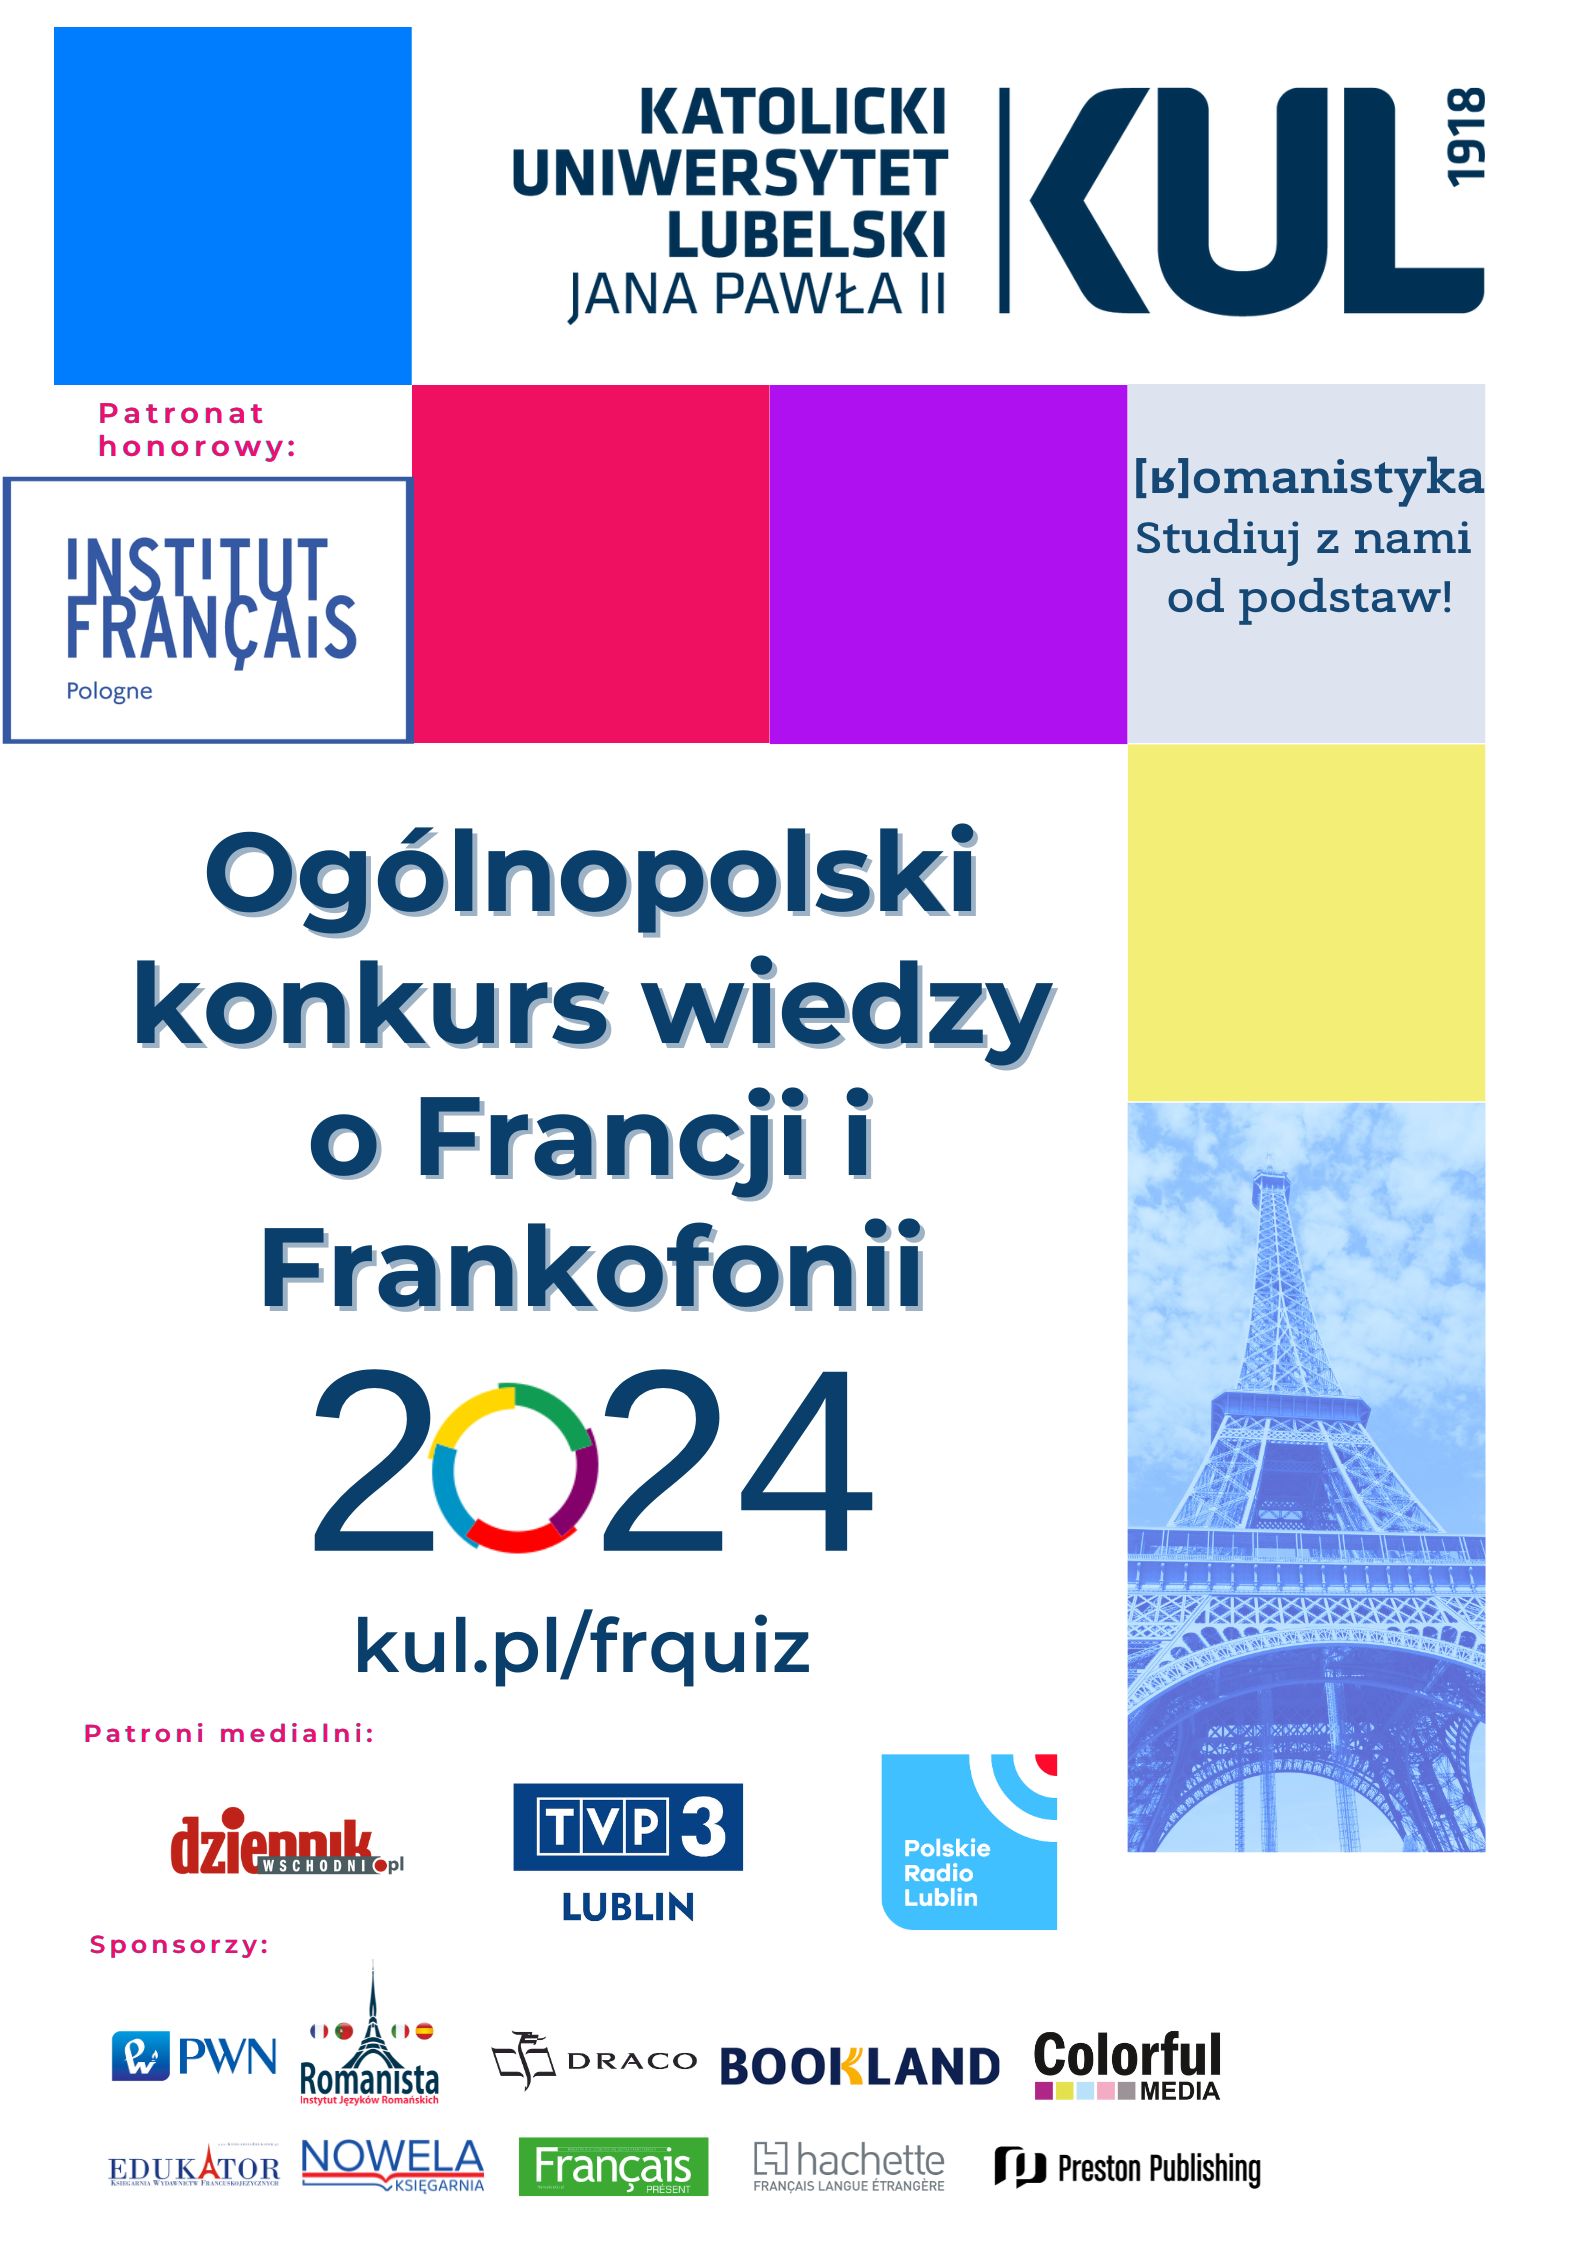 Ogolnopolski konkurs wiedzy o Francji i Frankofonii